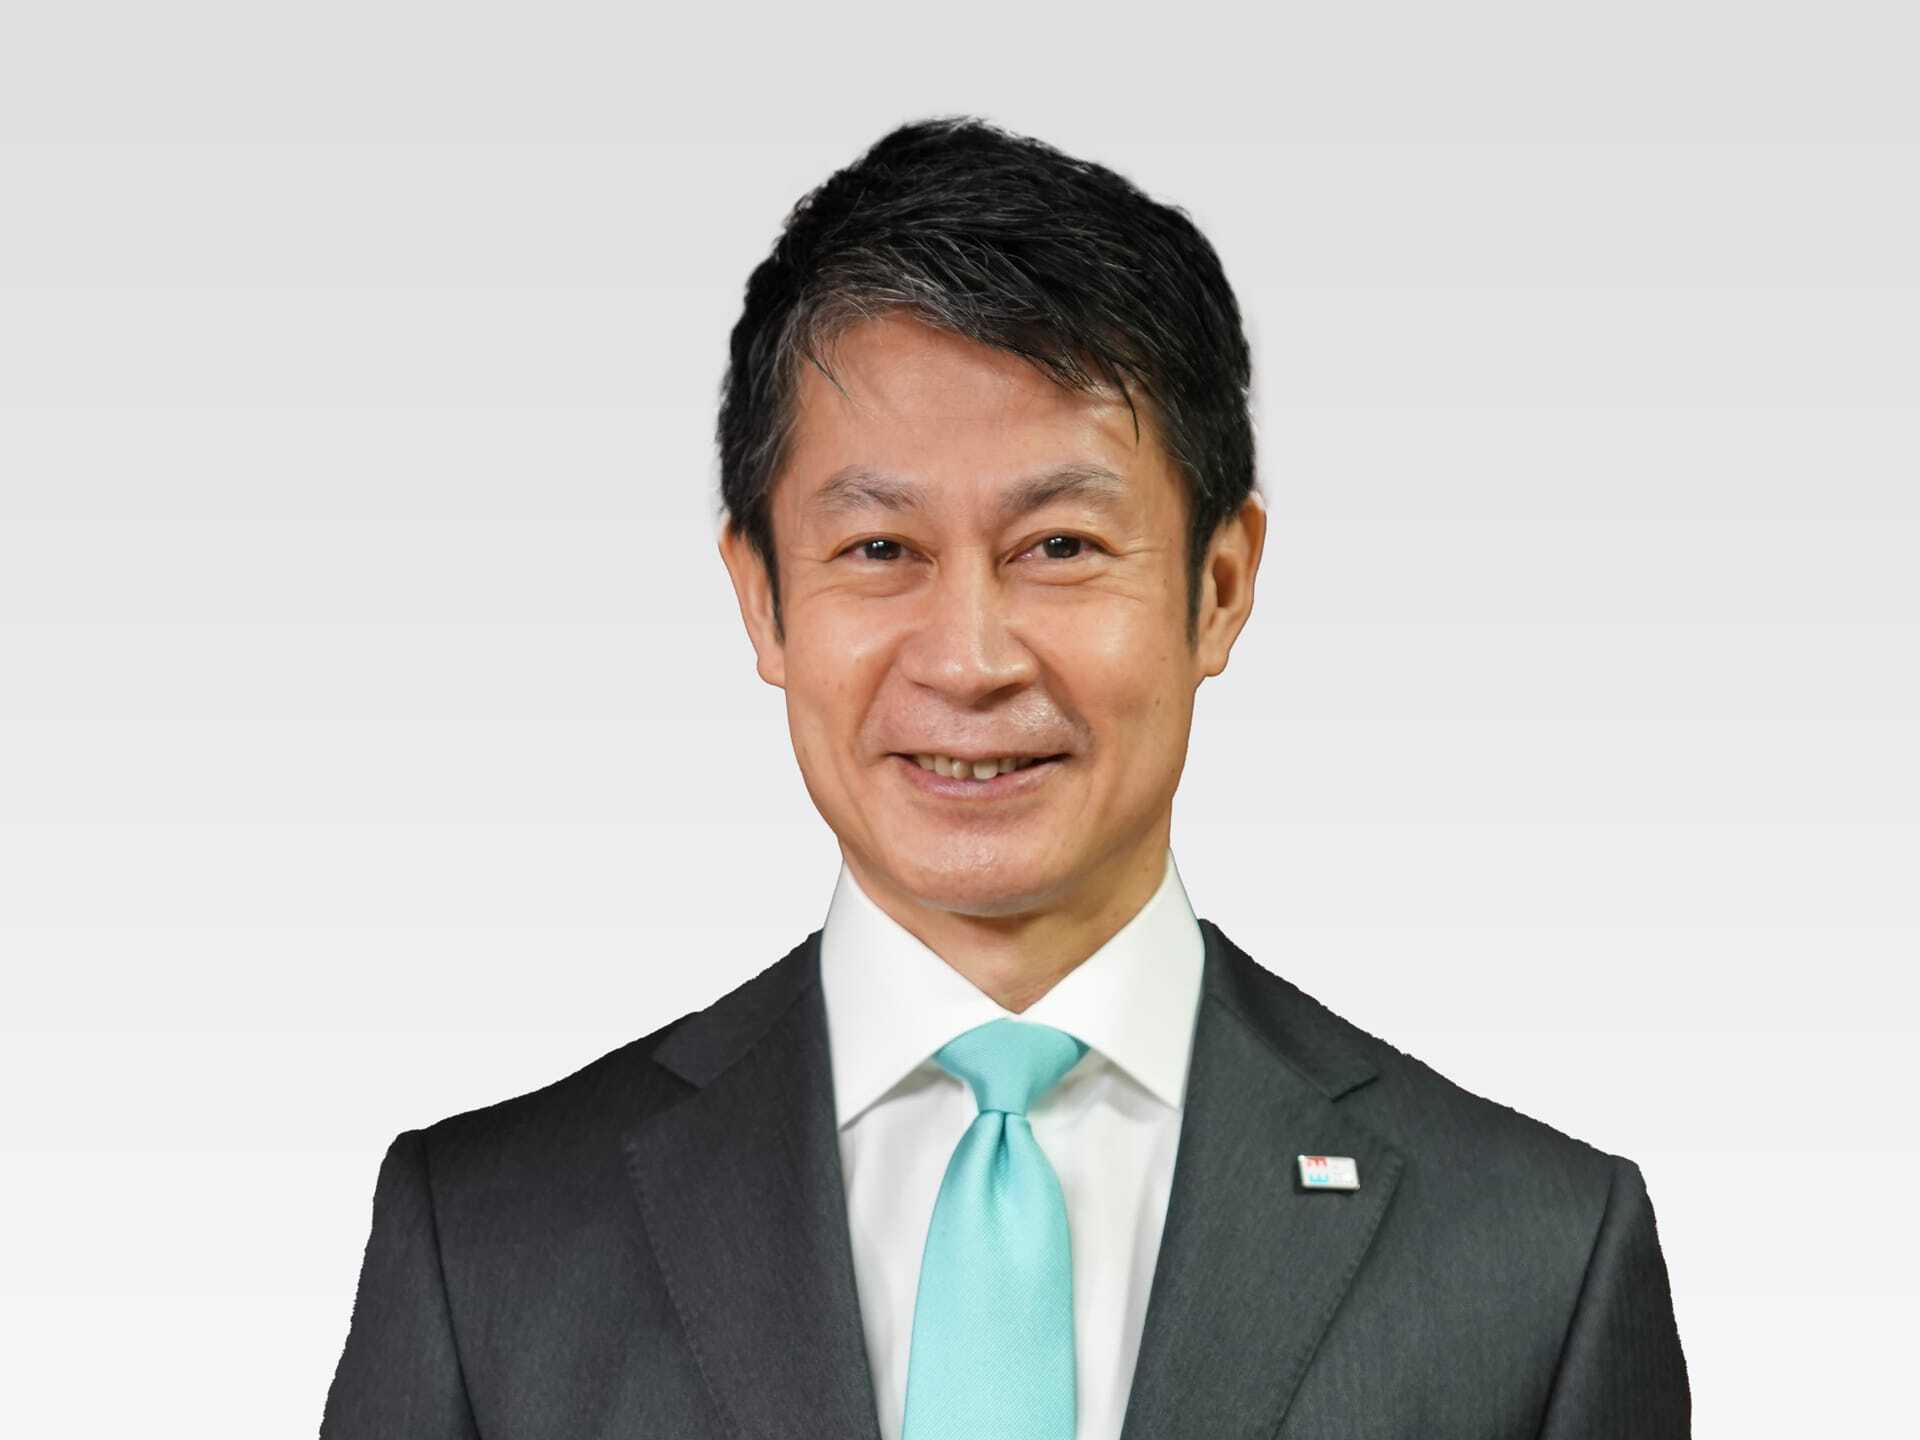 Facial photo of Yuzaki Prefectural Governor